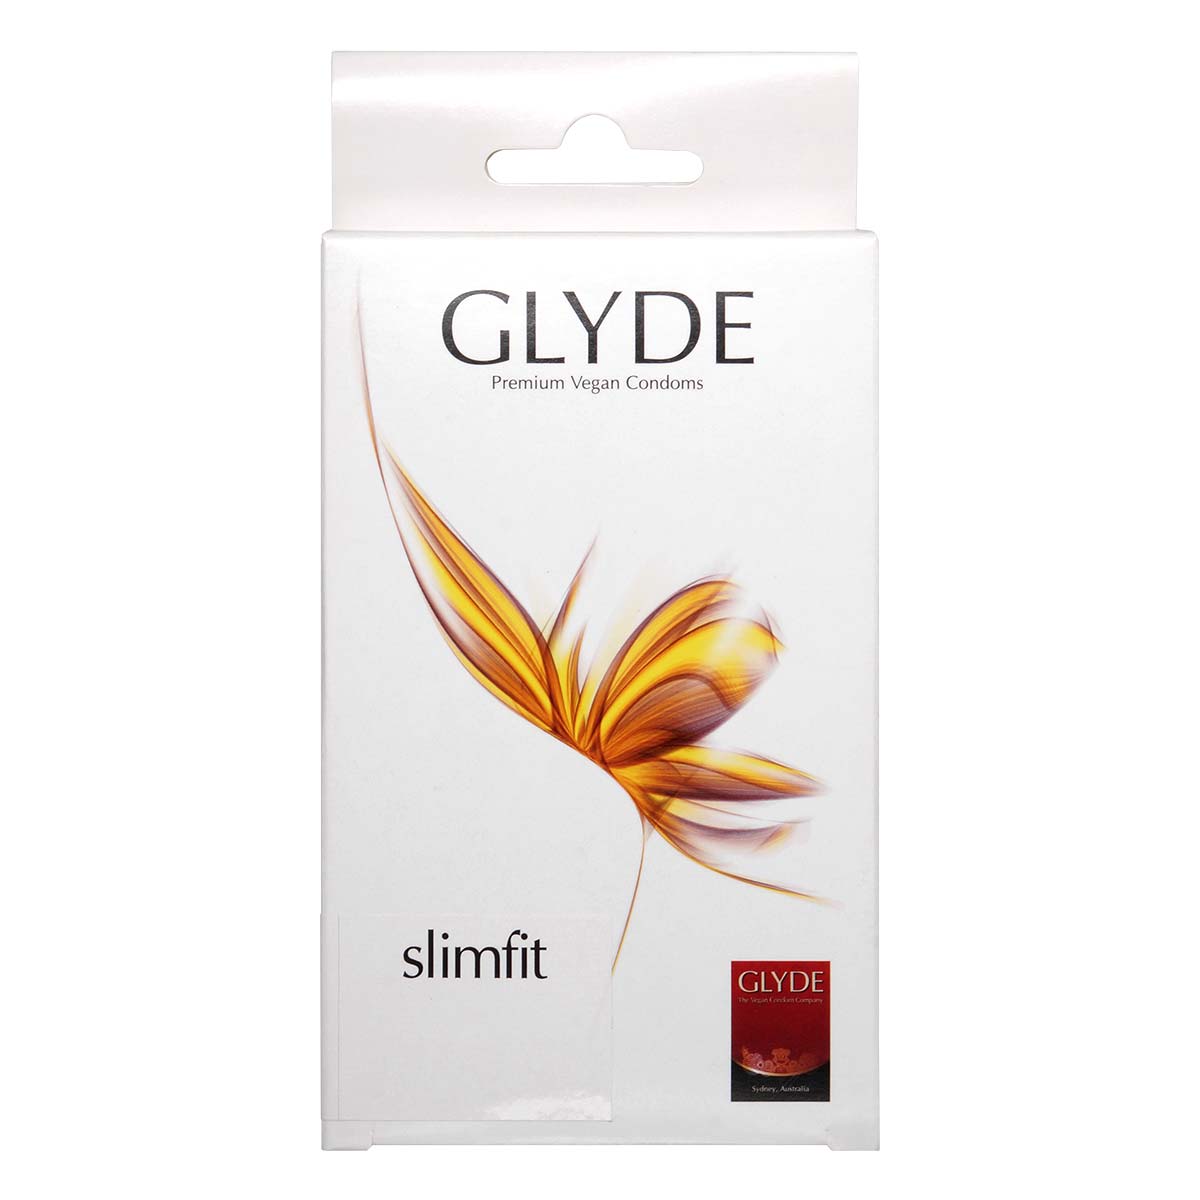 Glyde Vegan Condom Slimfit 49mm 10's Pack Latex Condom-thumb_2